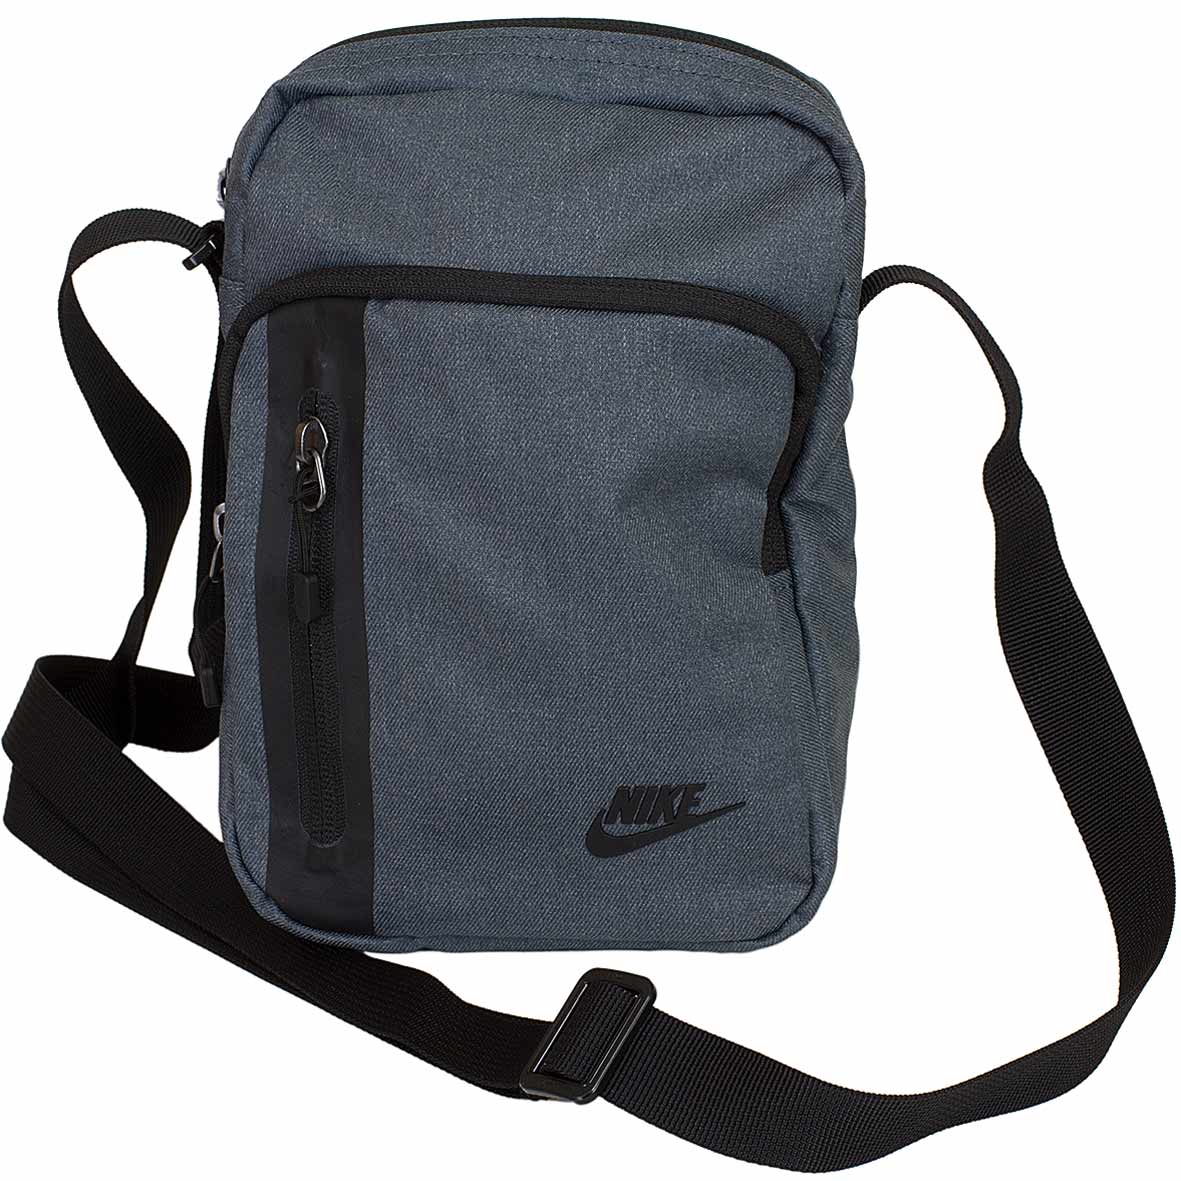 ☆ Nike Tasche Tech Small Items grau - hier bestellen!